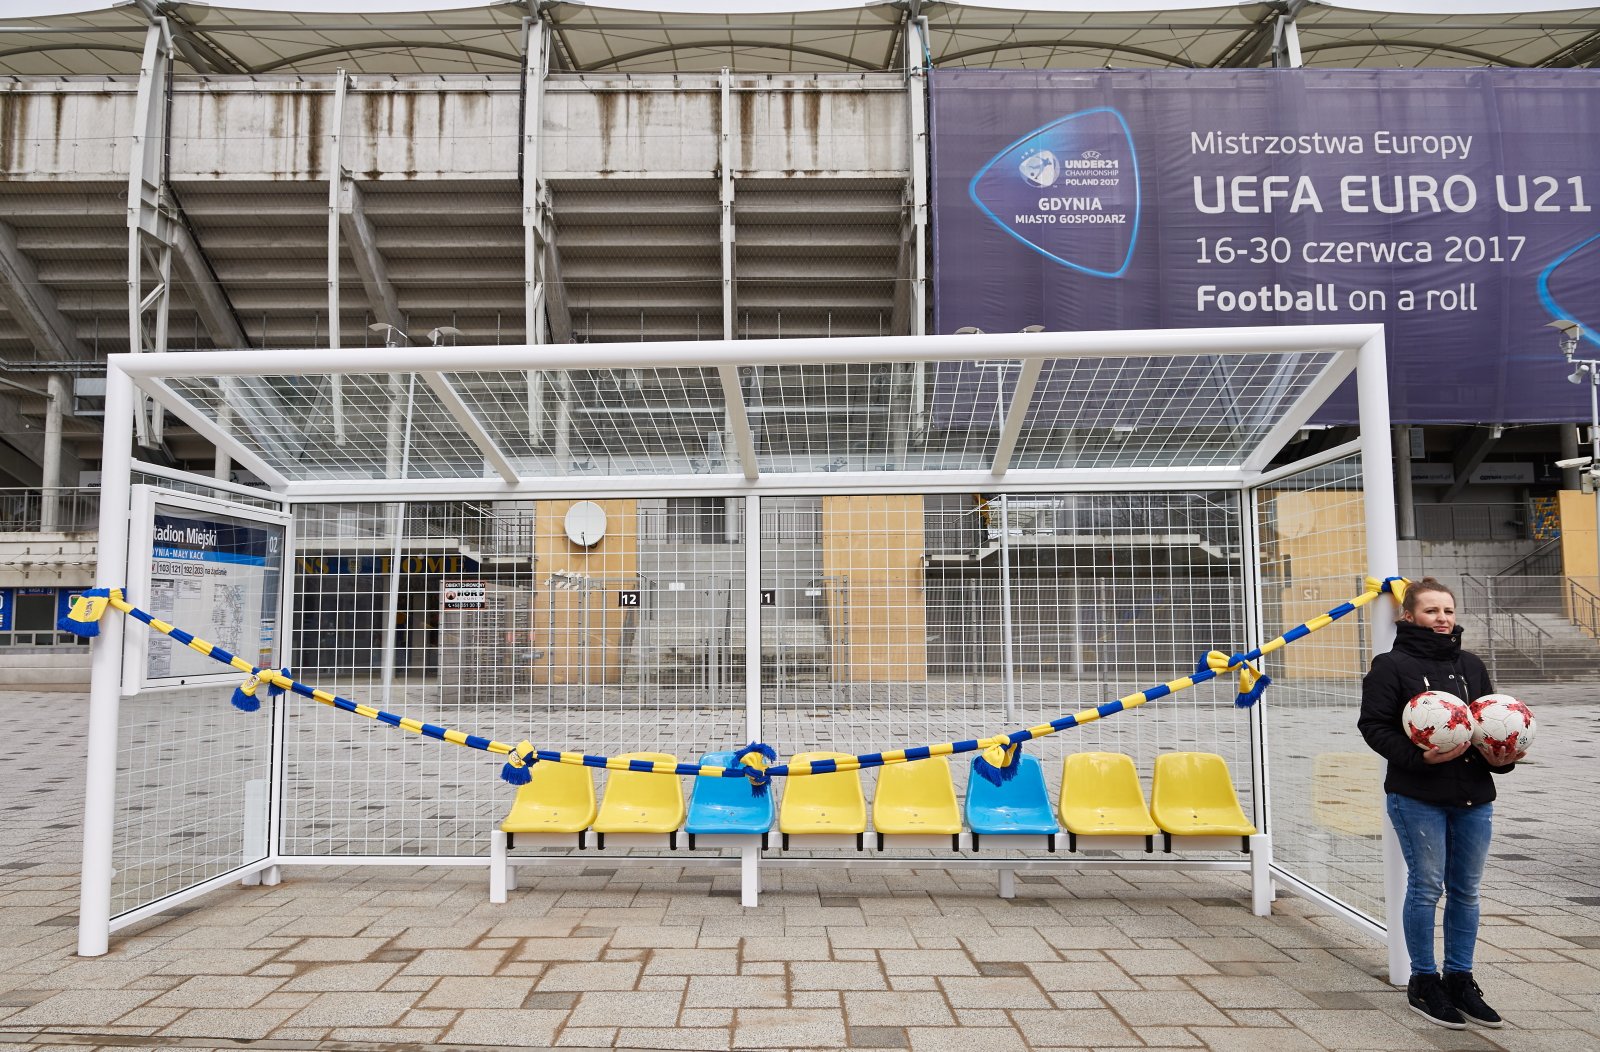 Przygotowany do oficjalnego otwarcia przystanek autobusowy w kształcie bramki piłkarskiej w Gdyni. Fot. PAP/Adam Warżawa